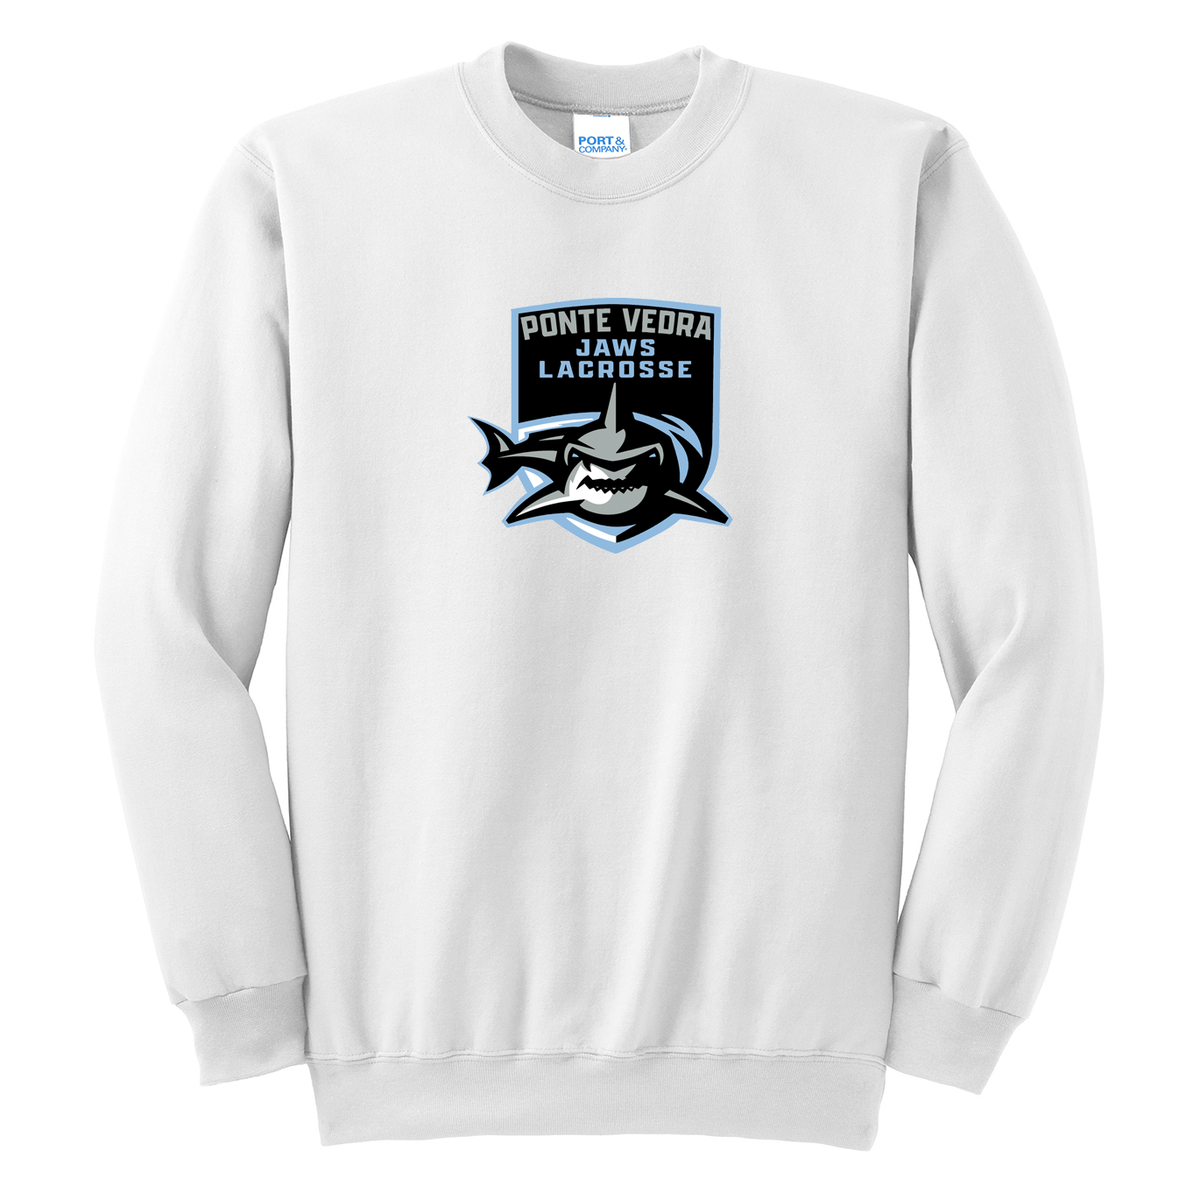 Ponte Vedra JAWS Lacrosse Crew Neck Sweater